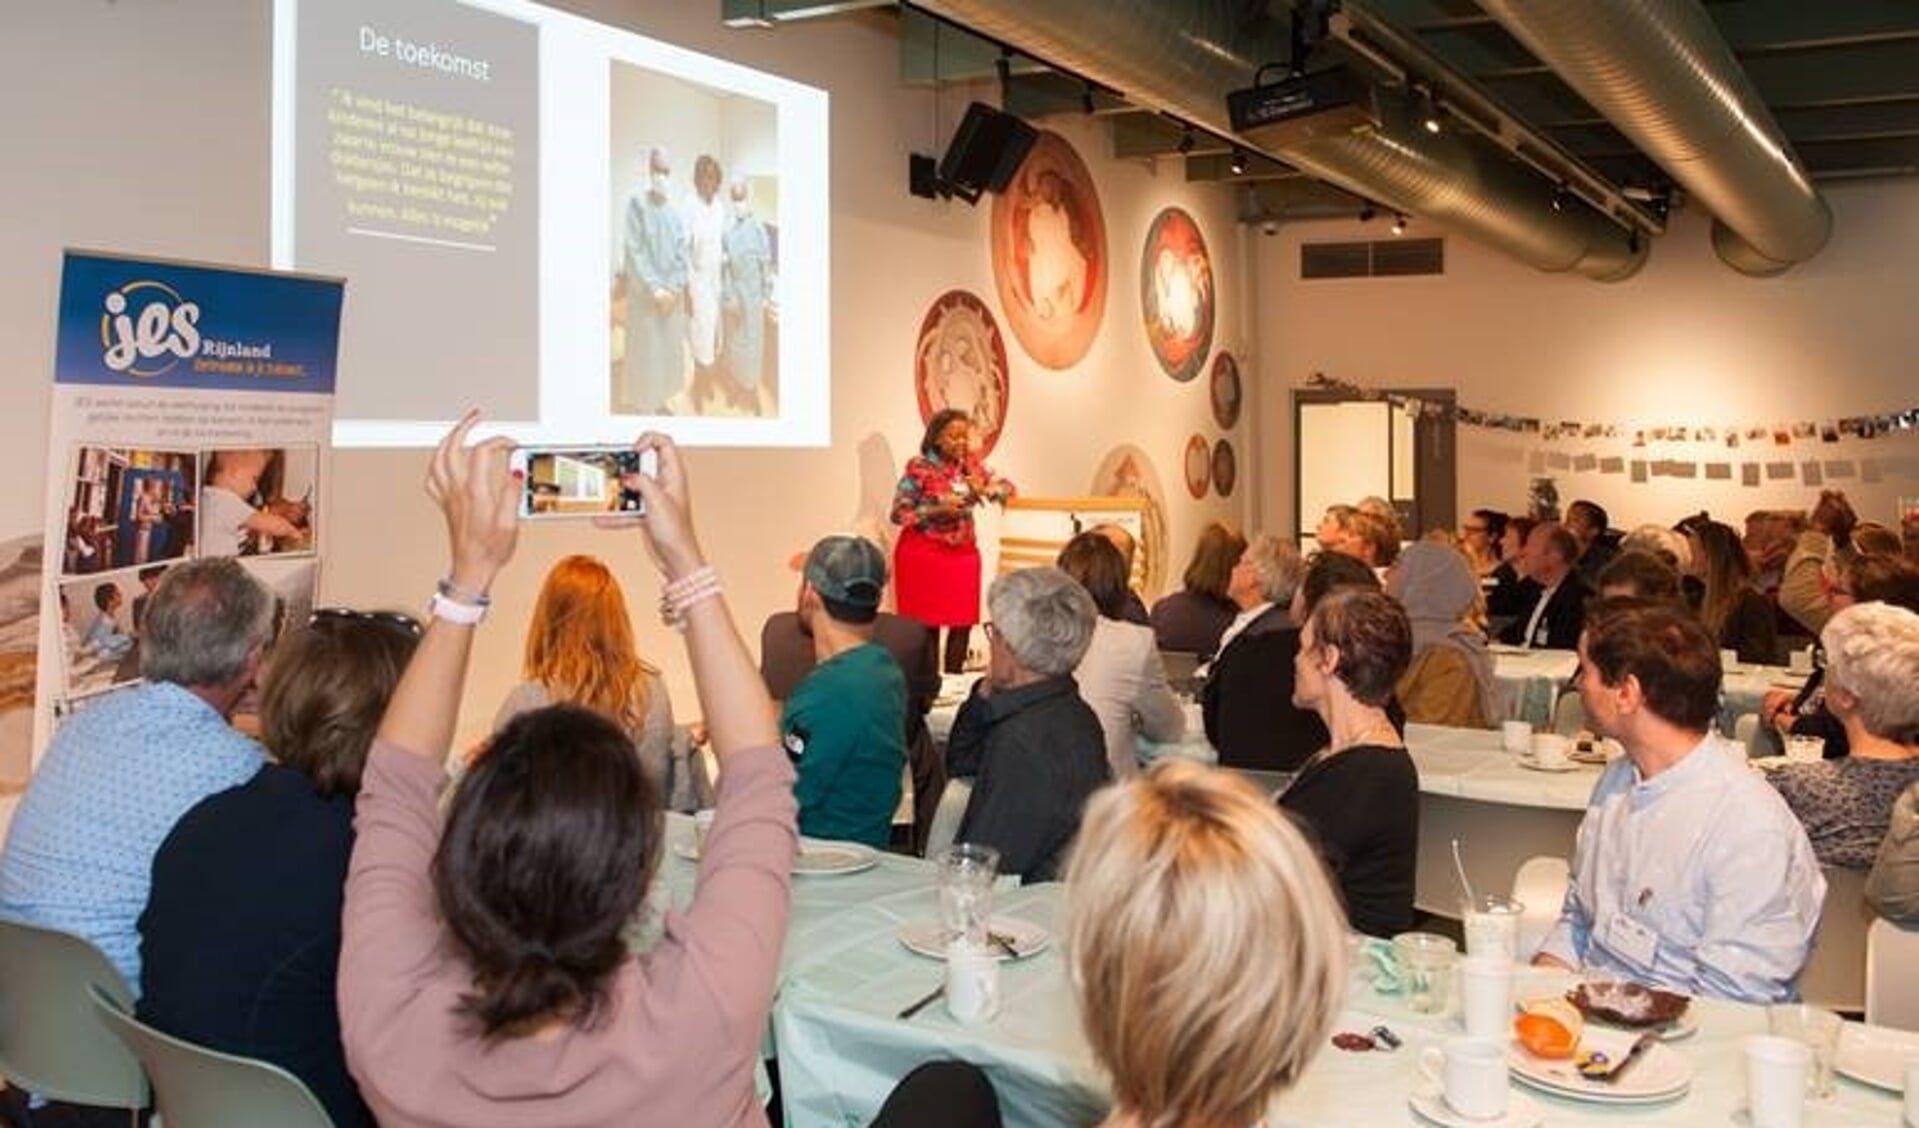 Op de foto: WeekendKlas-gastspreker dr. Hariette Verwey spreekt de volle zaal toe over het hart tijdens het WeekendKlas en Zomerschool ontbijt. | Foto: Eelkje Colmjon.